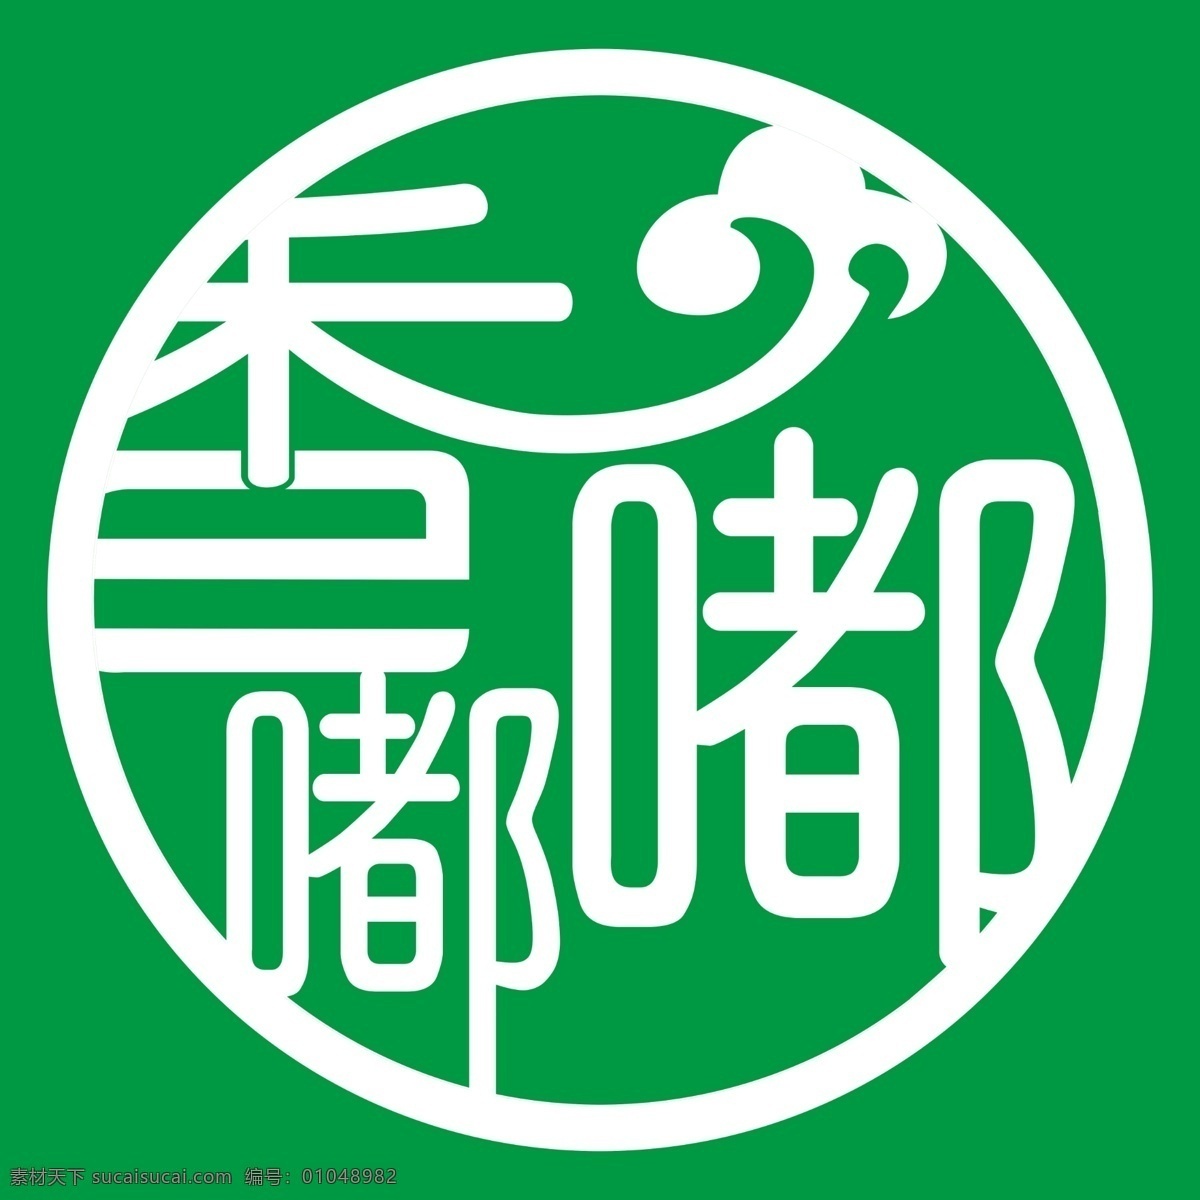 美食logo 餐饮logo 餐厅logo 饭店logo 香 嘟嘟 logo 香logo logo香 logo设计 圆形logo 酒店logo 餐饮文化 古典logo